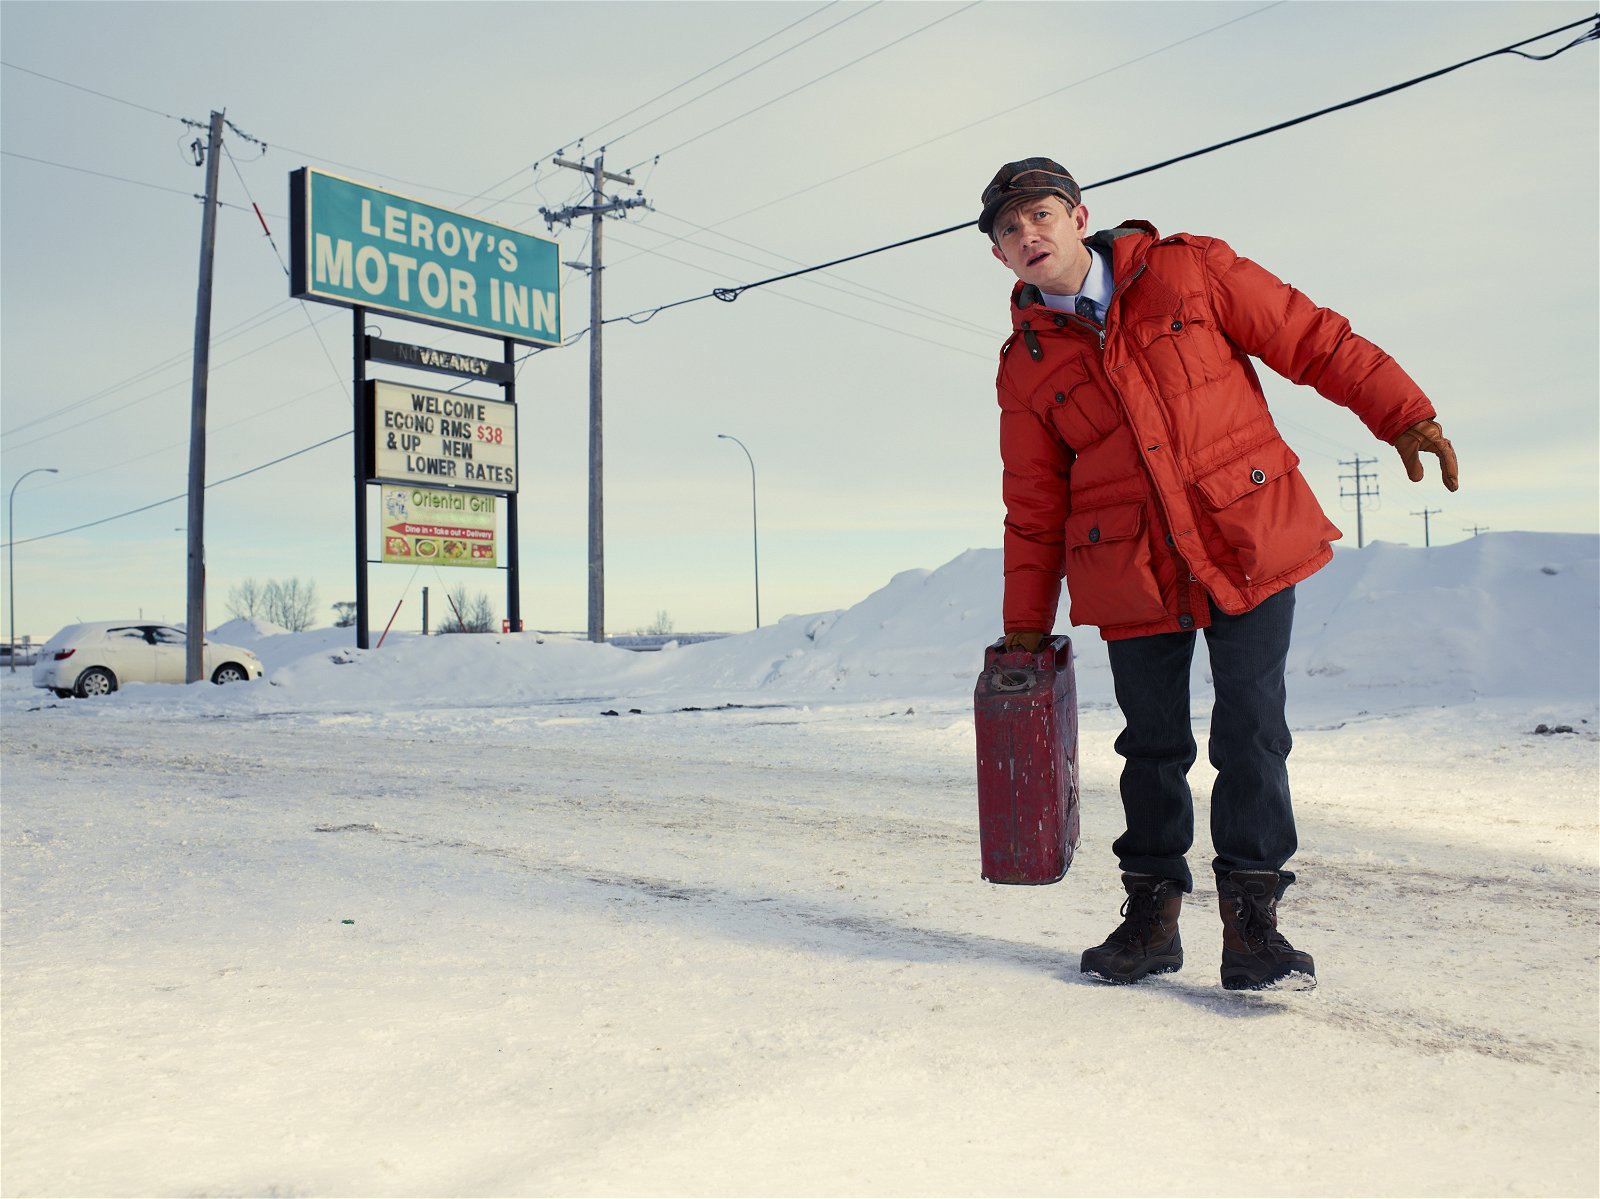 Fargo – TV-historiens mest underskattade serie?